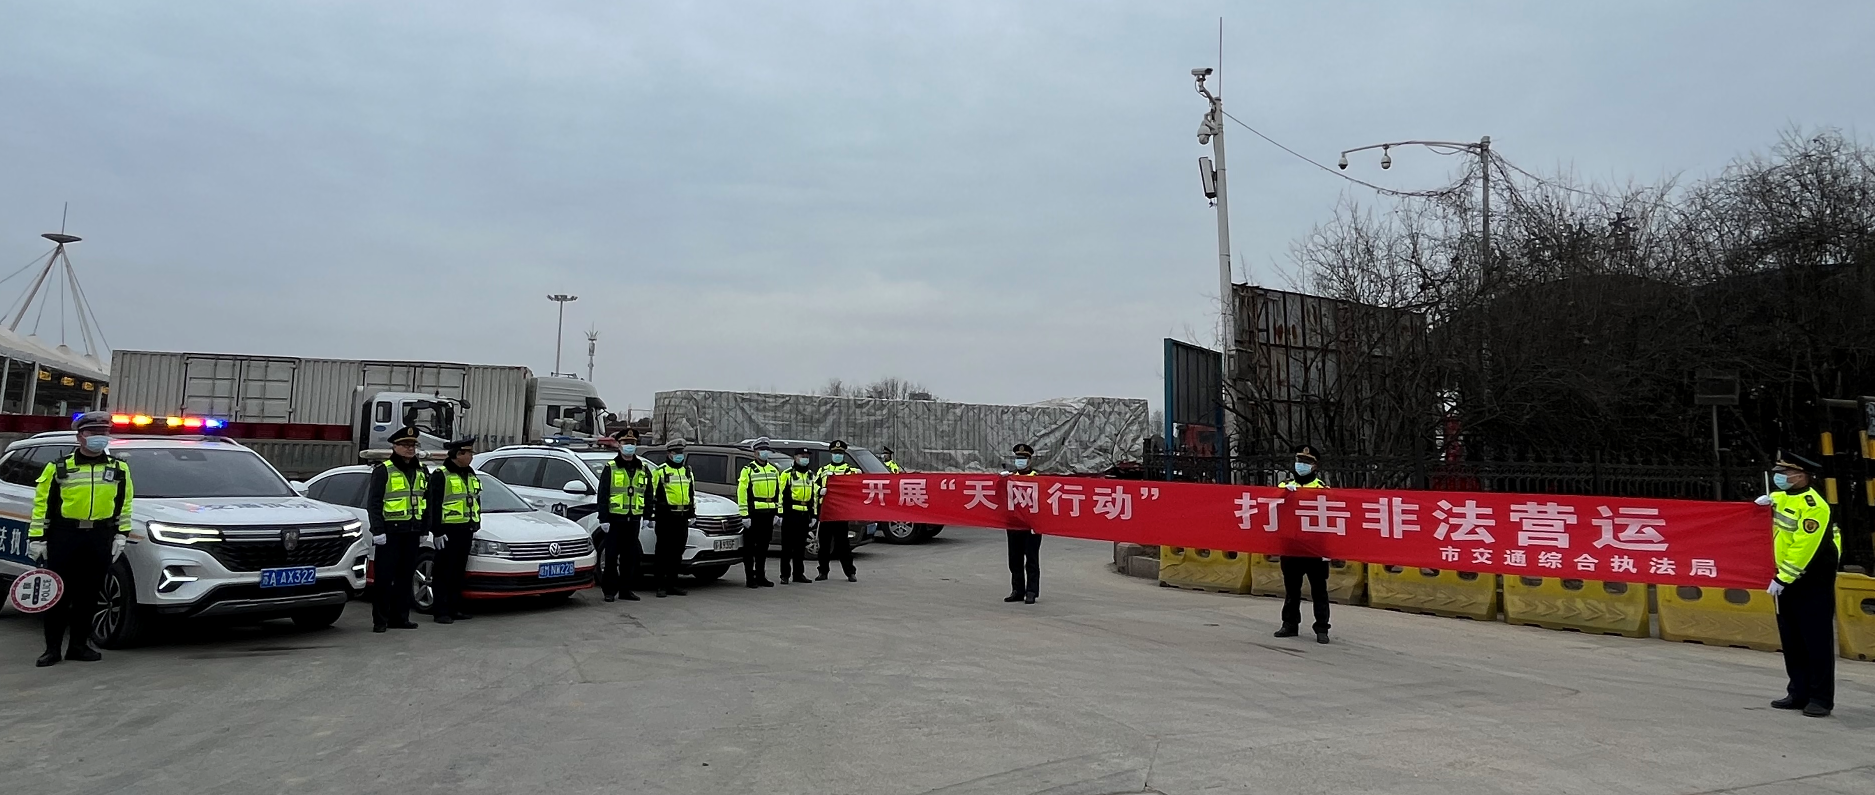 宁滁两市联合开展打击非法营运“天网一号”行动